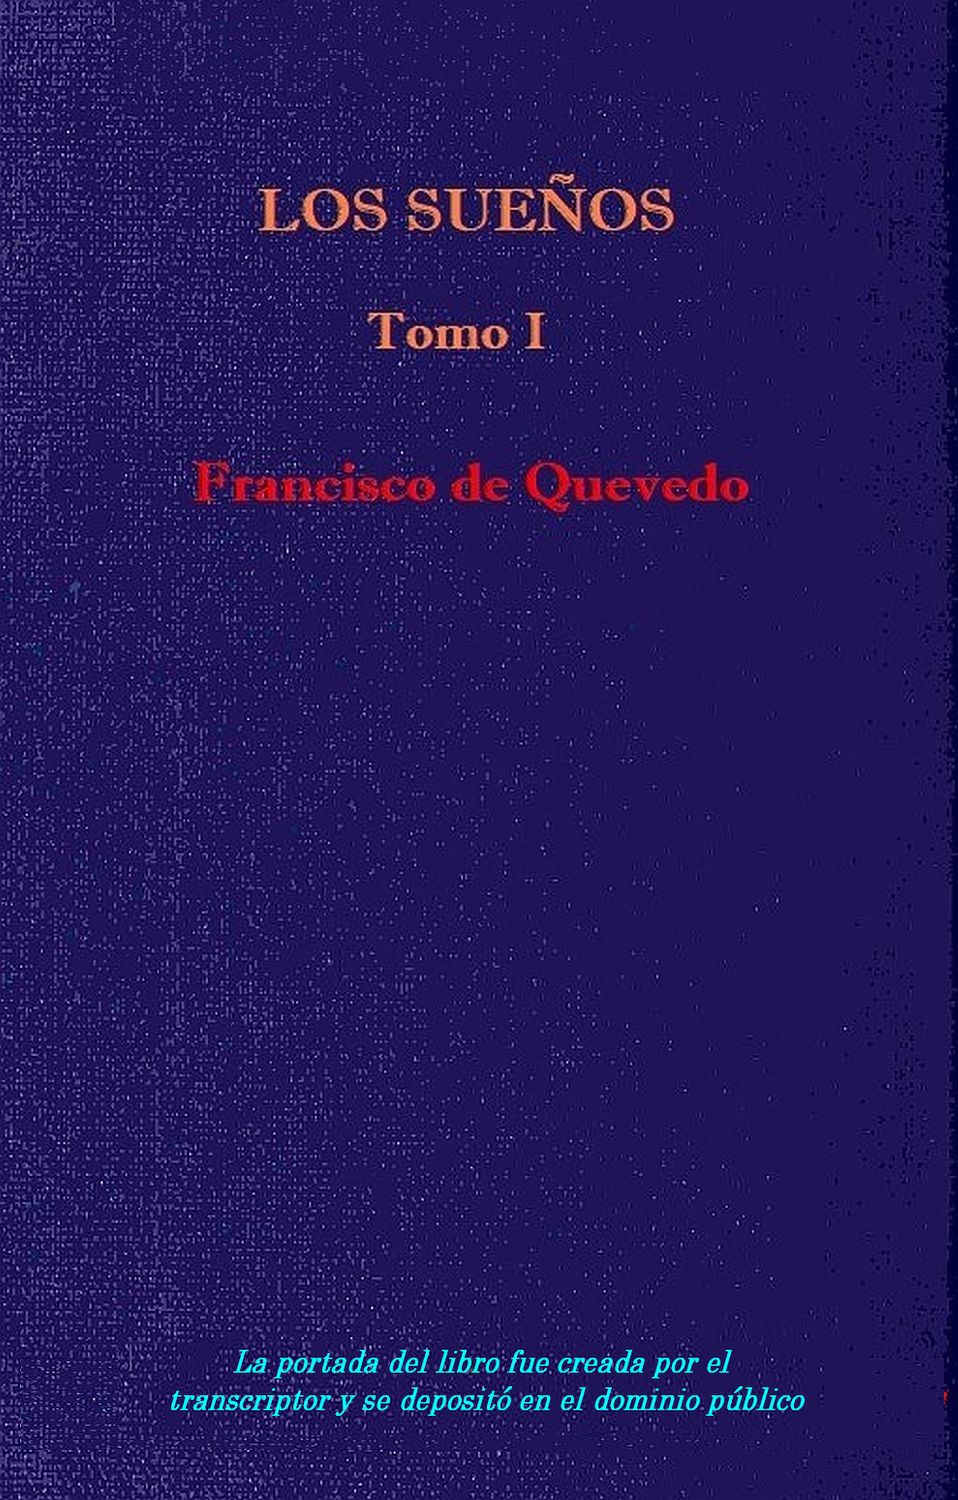 Los sueños - Vol. 1, by Quevedo—A Project Gutenberg eBook